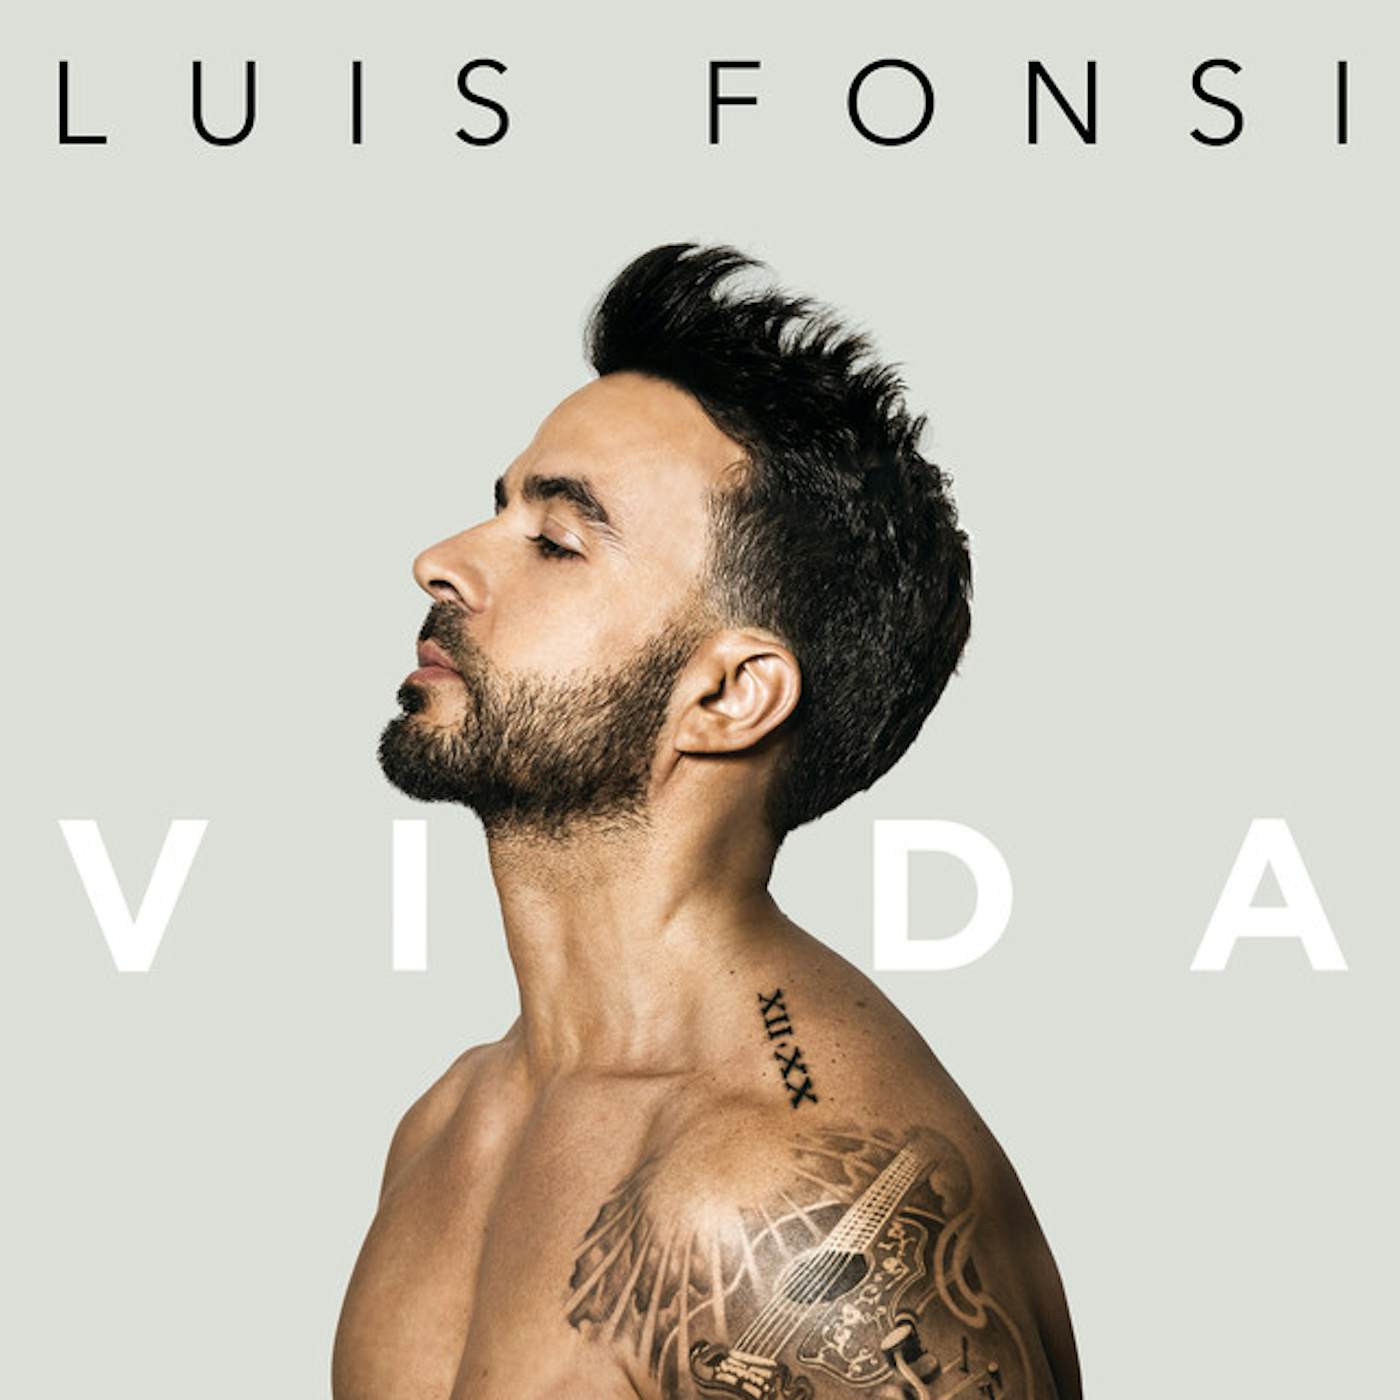 Luis Fonsi Vida Vinyl Record